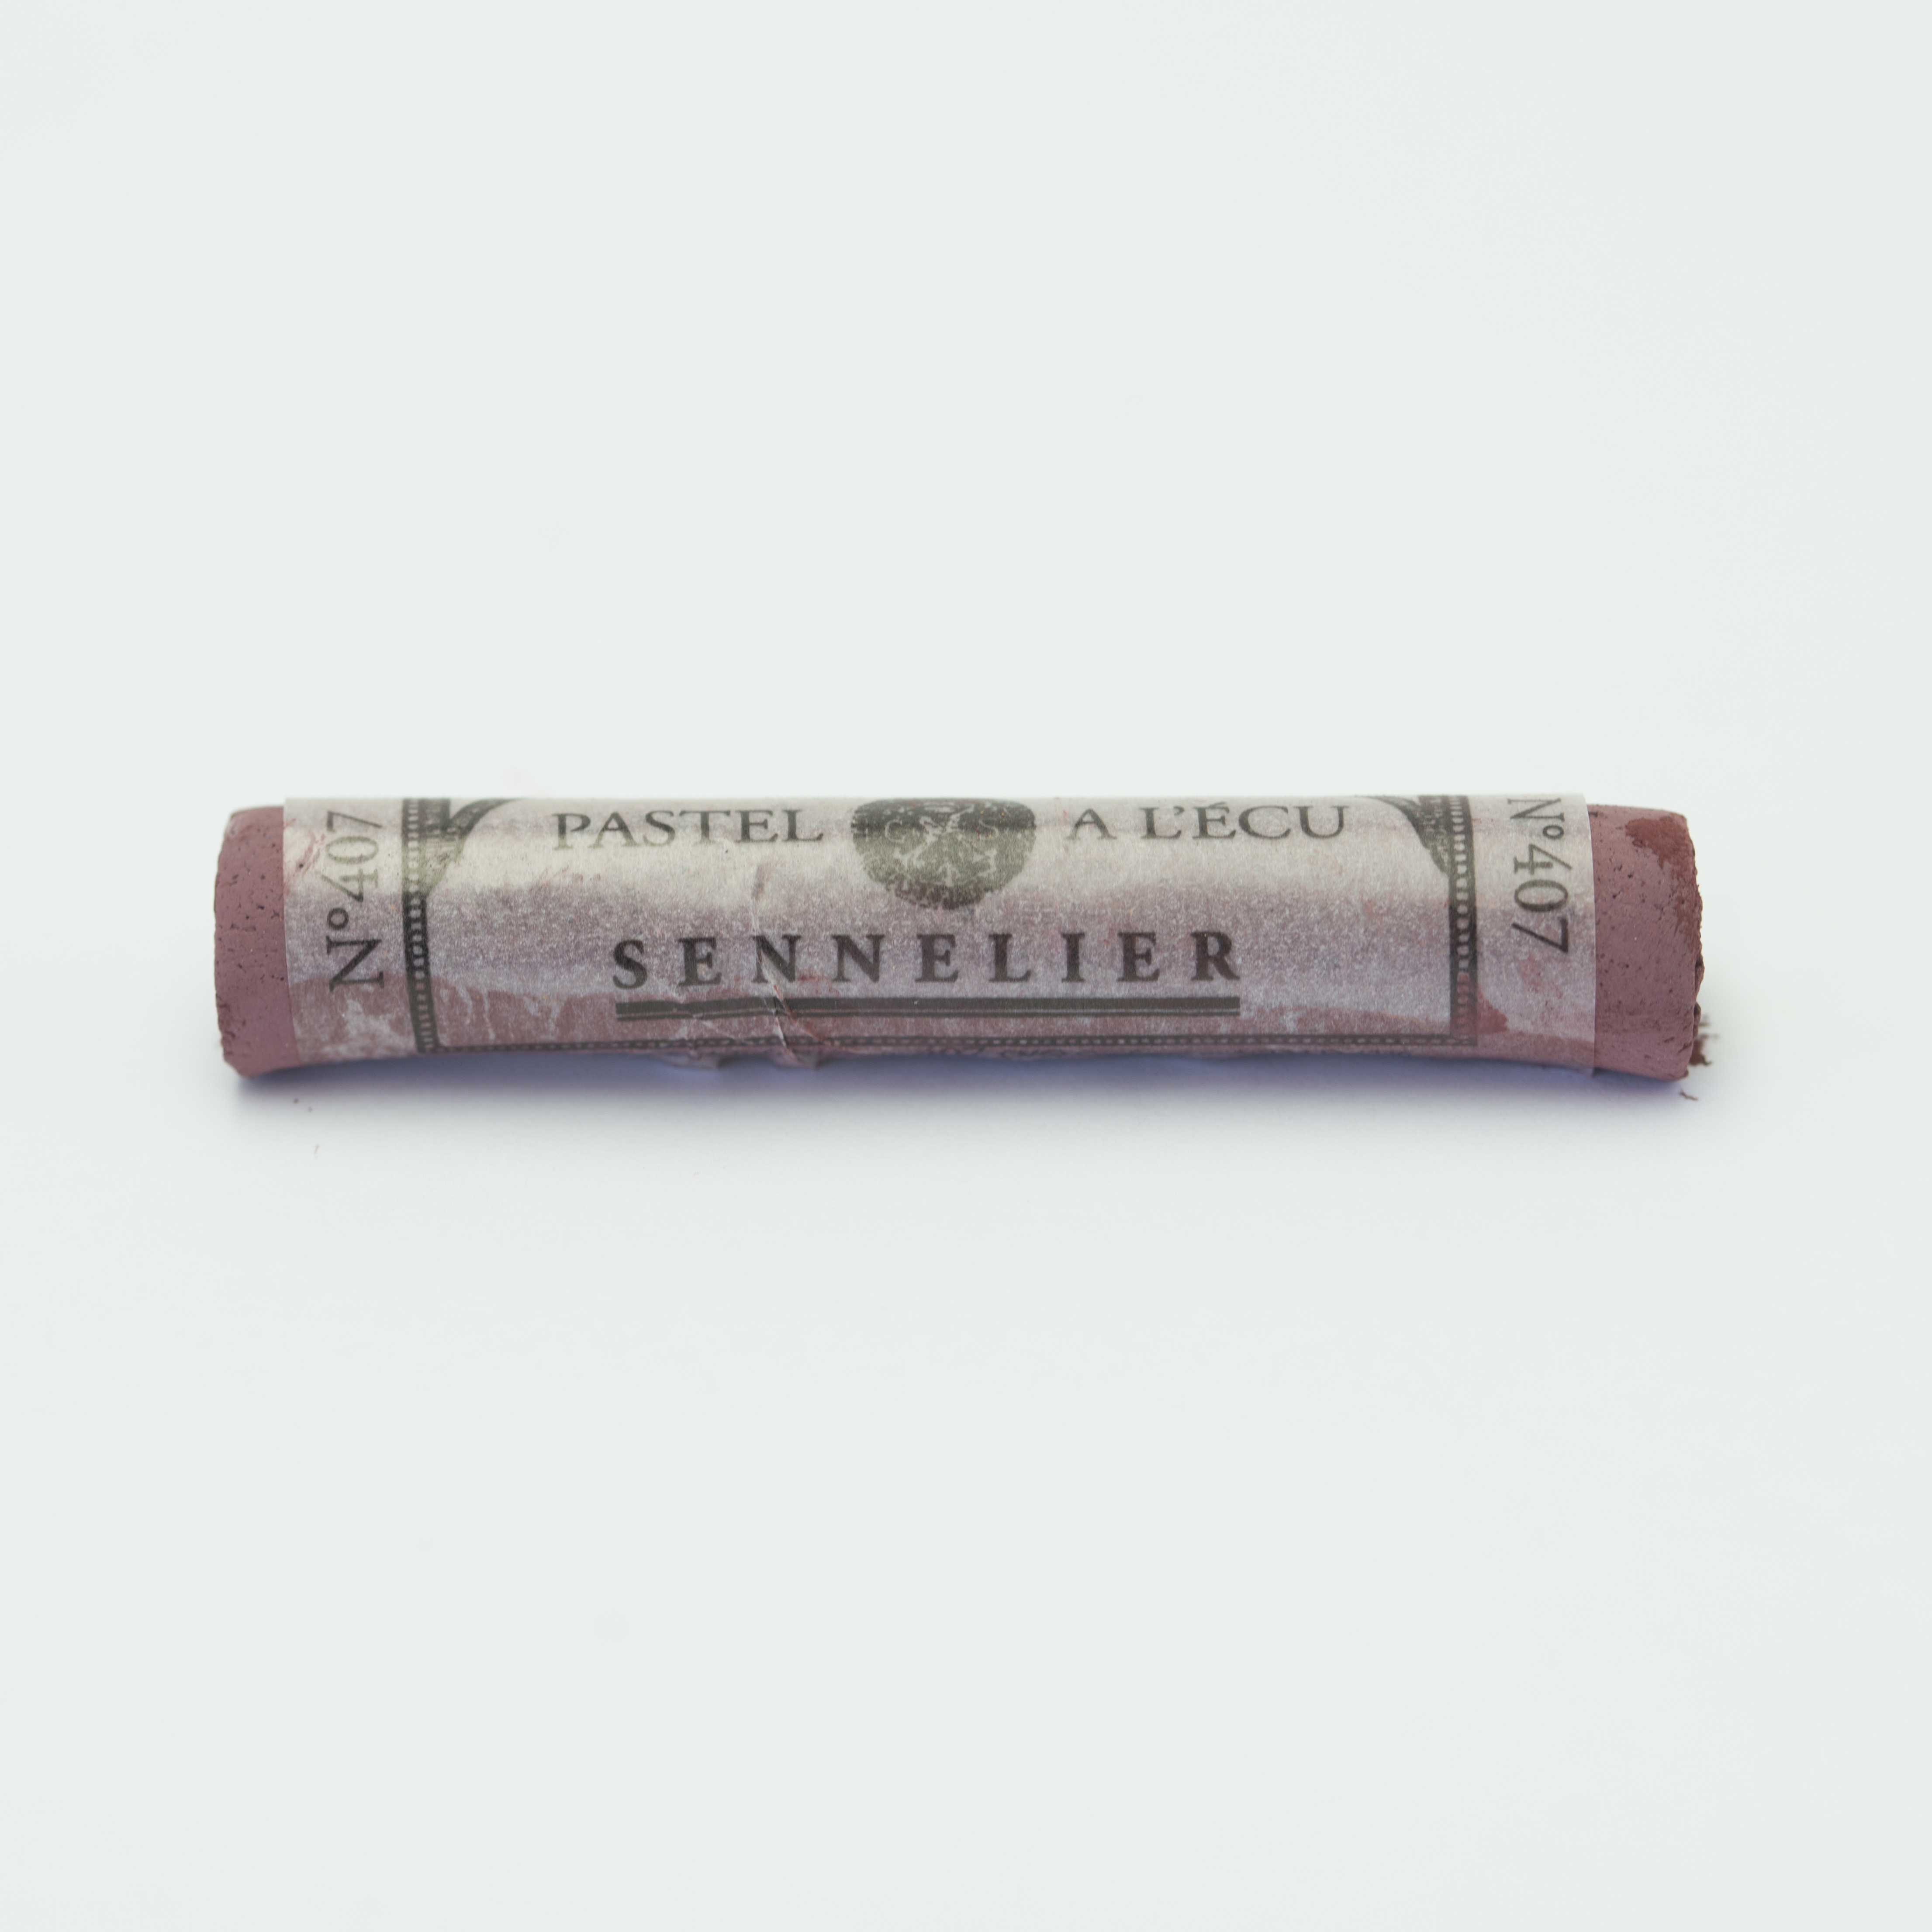 Sennelier Extra Soft Pastels - Van Dick Violet 407